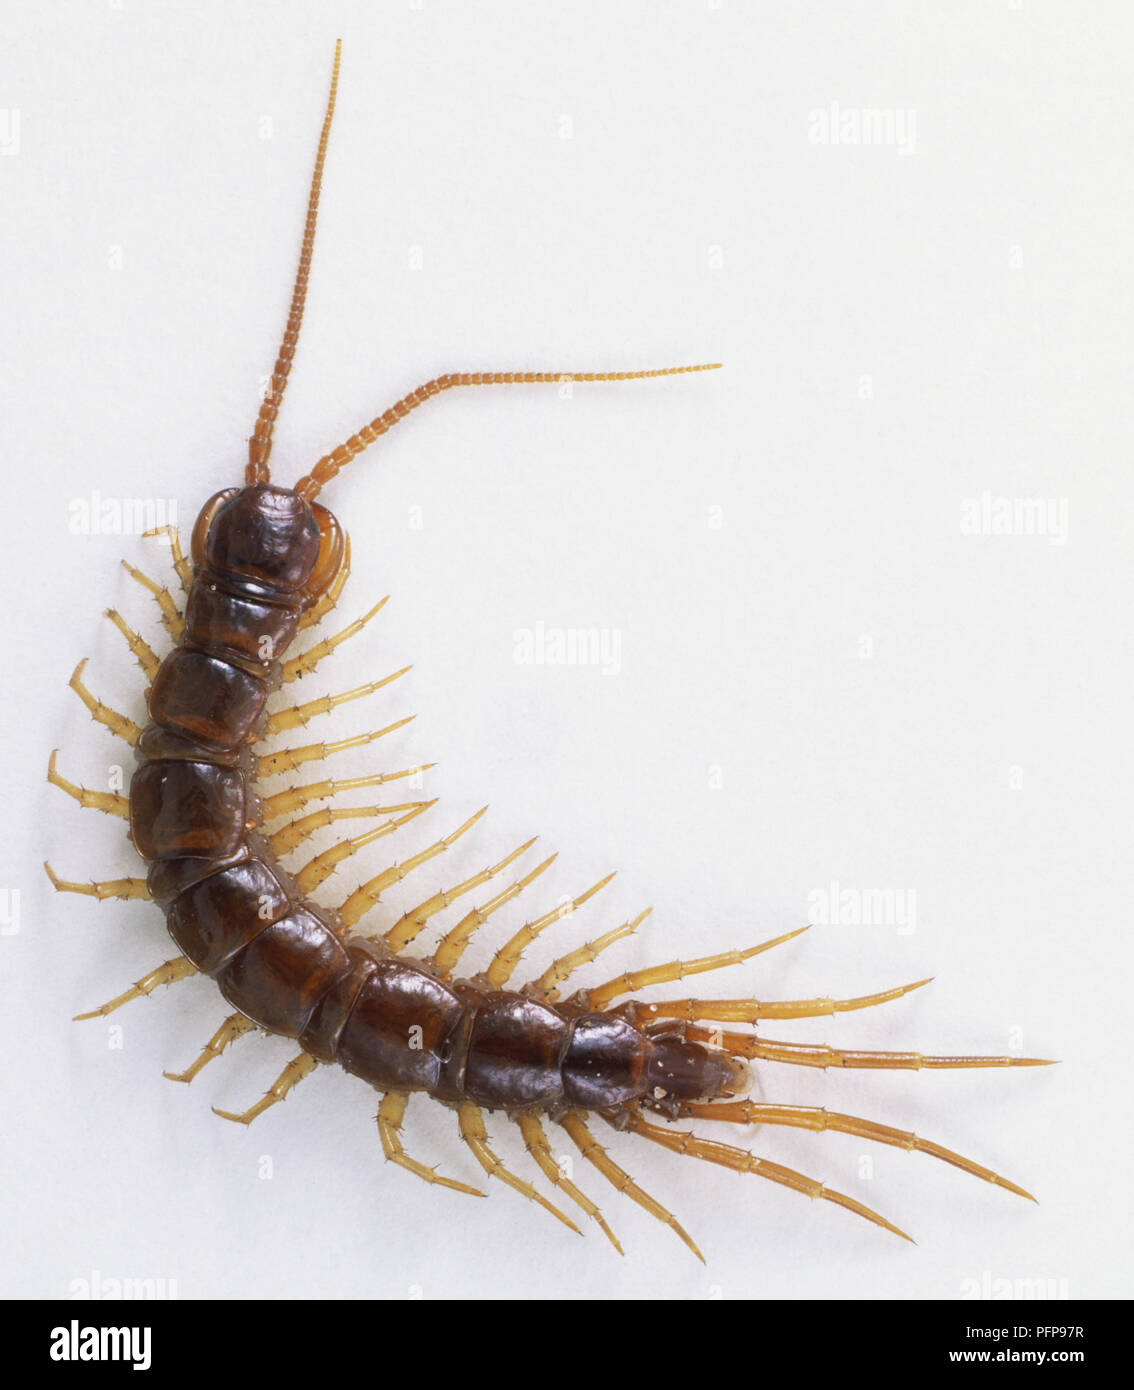 Common European Centipede (Lithobius forficatus), close up Stock Photo